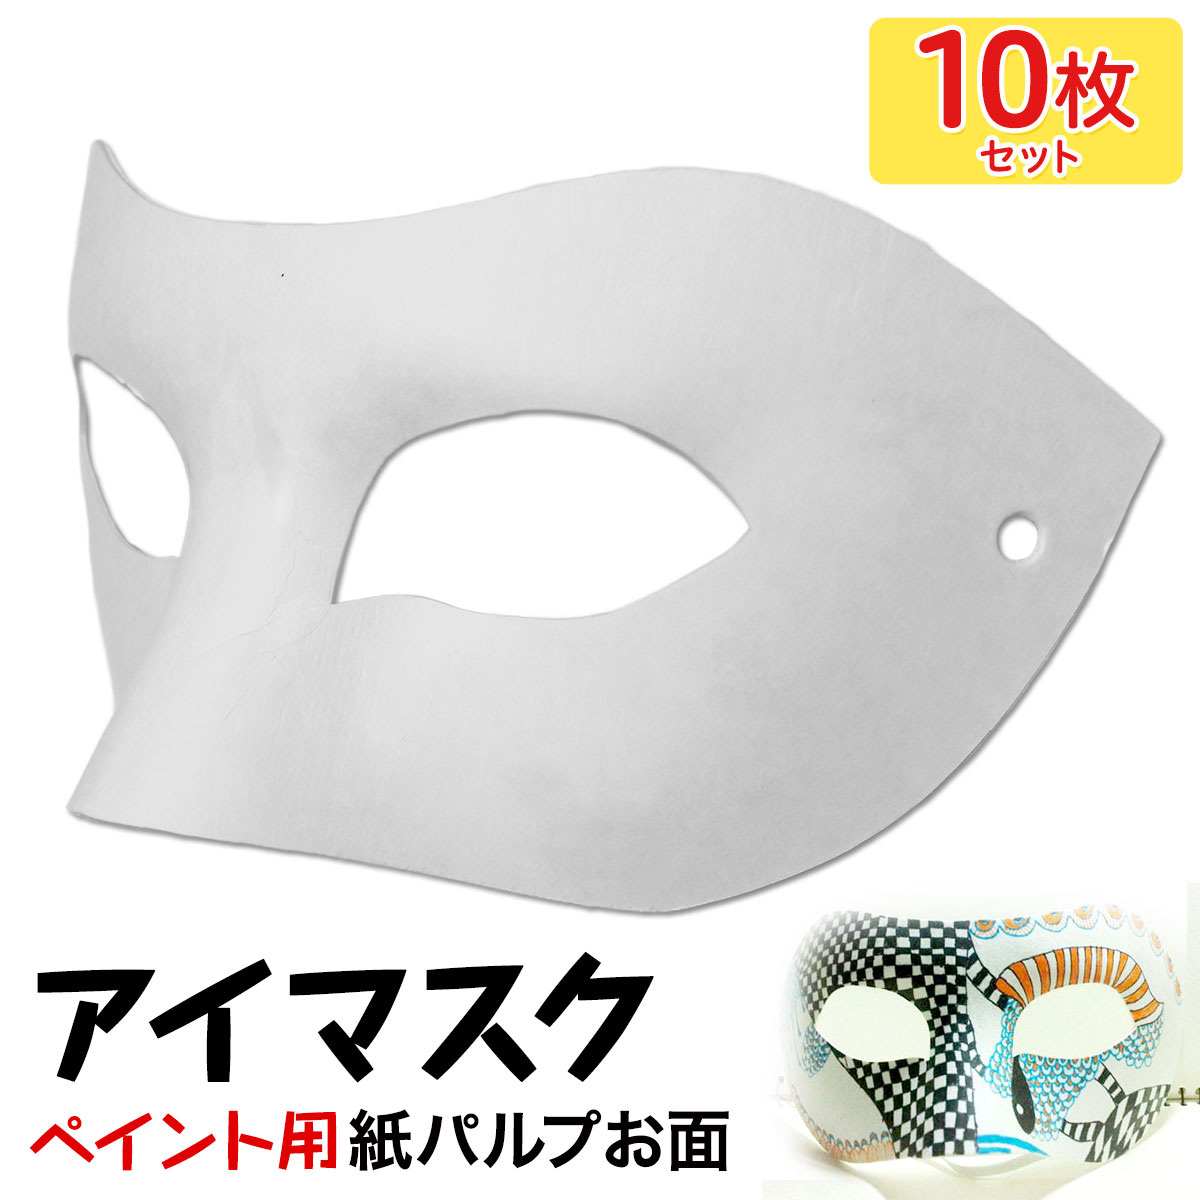 【エントリーでP10倍】 お面 ホワイトマスク アイマスク 仮面 無地 ペイント 飾り パーティー 紙パルプ製 10枚セット